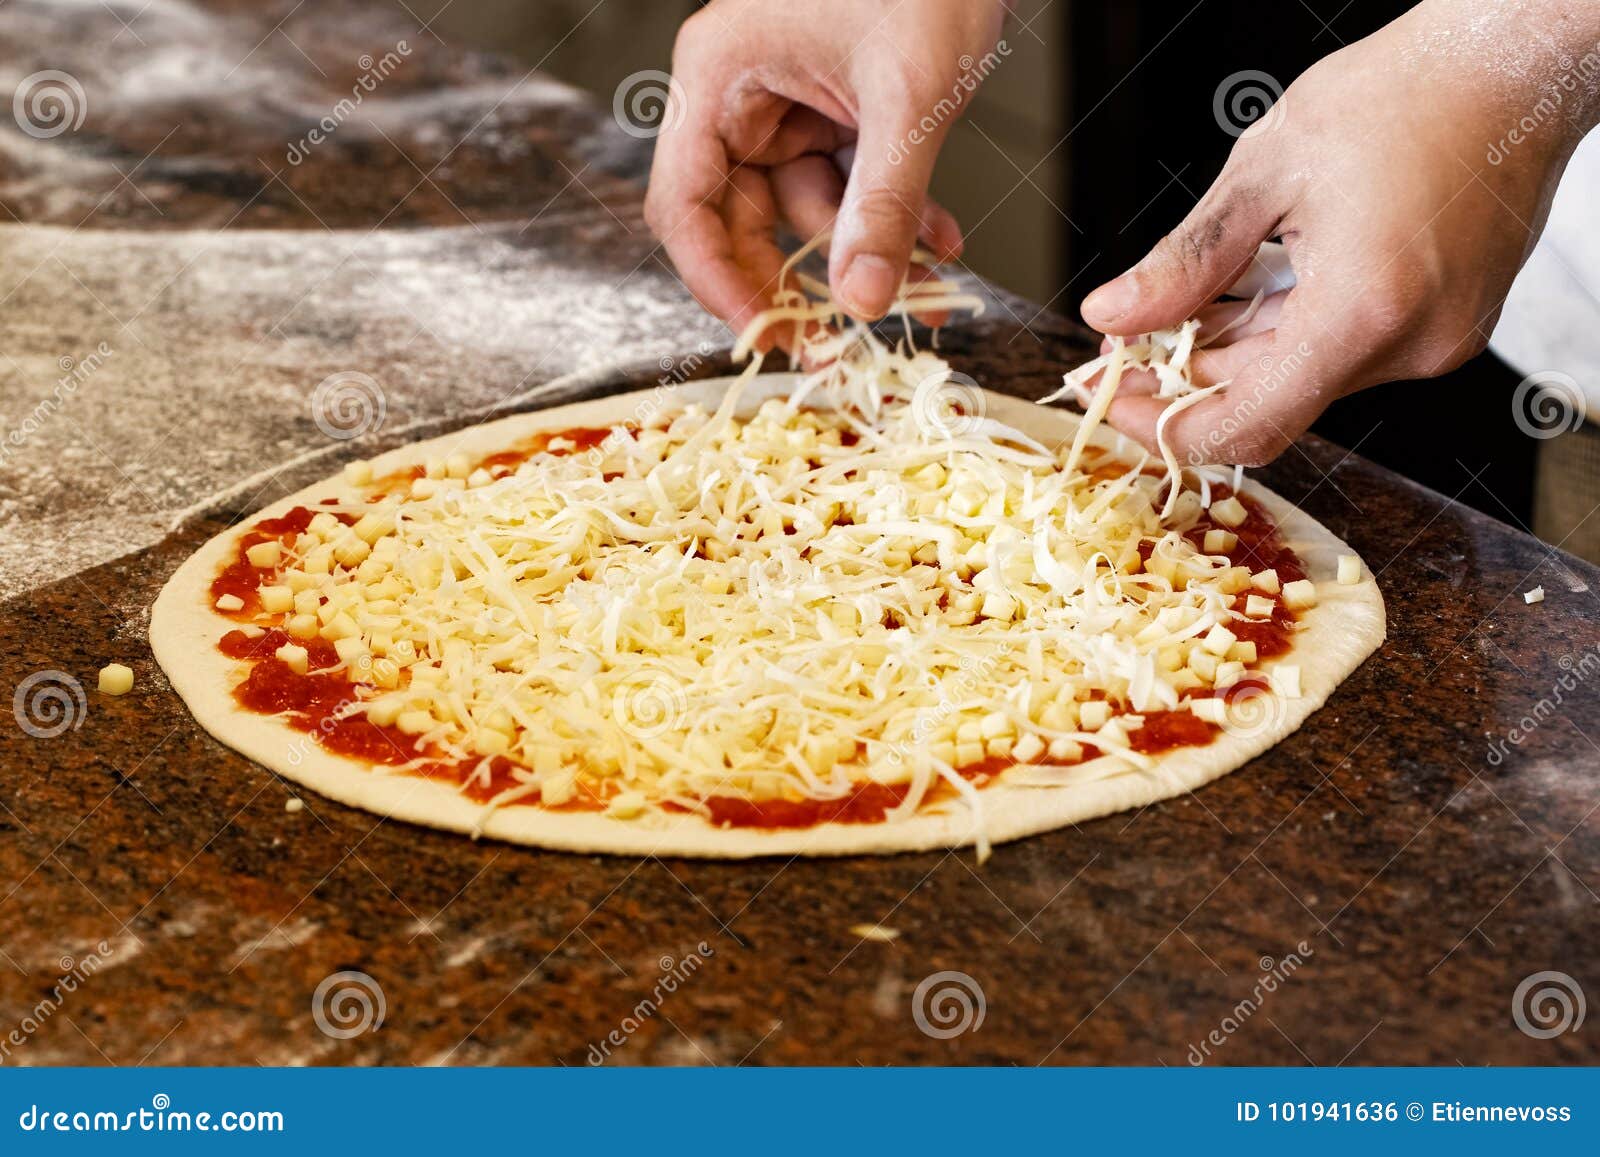 когда ложат сыр в пиццу до или после начинки (120) фото